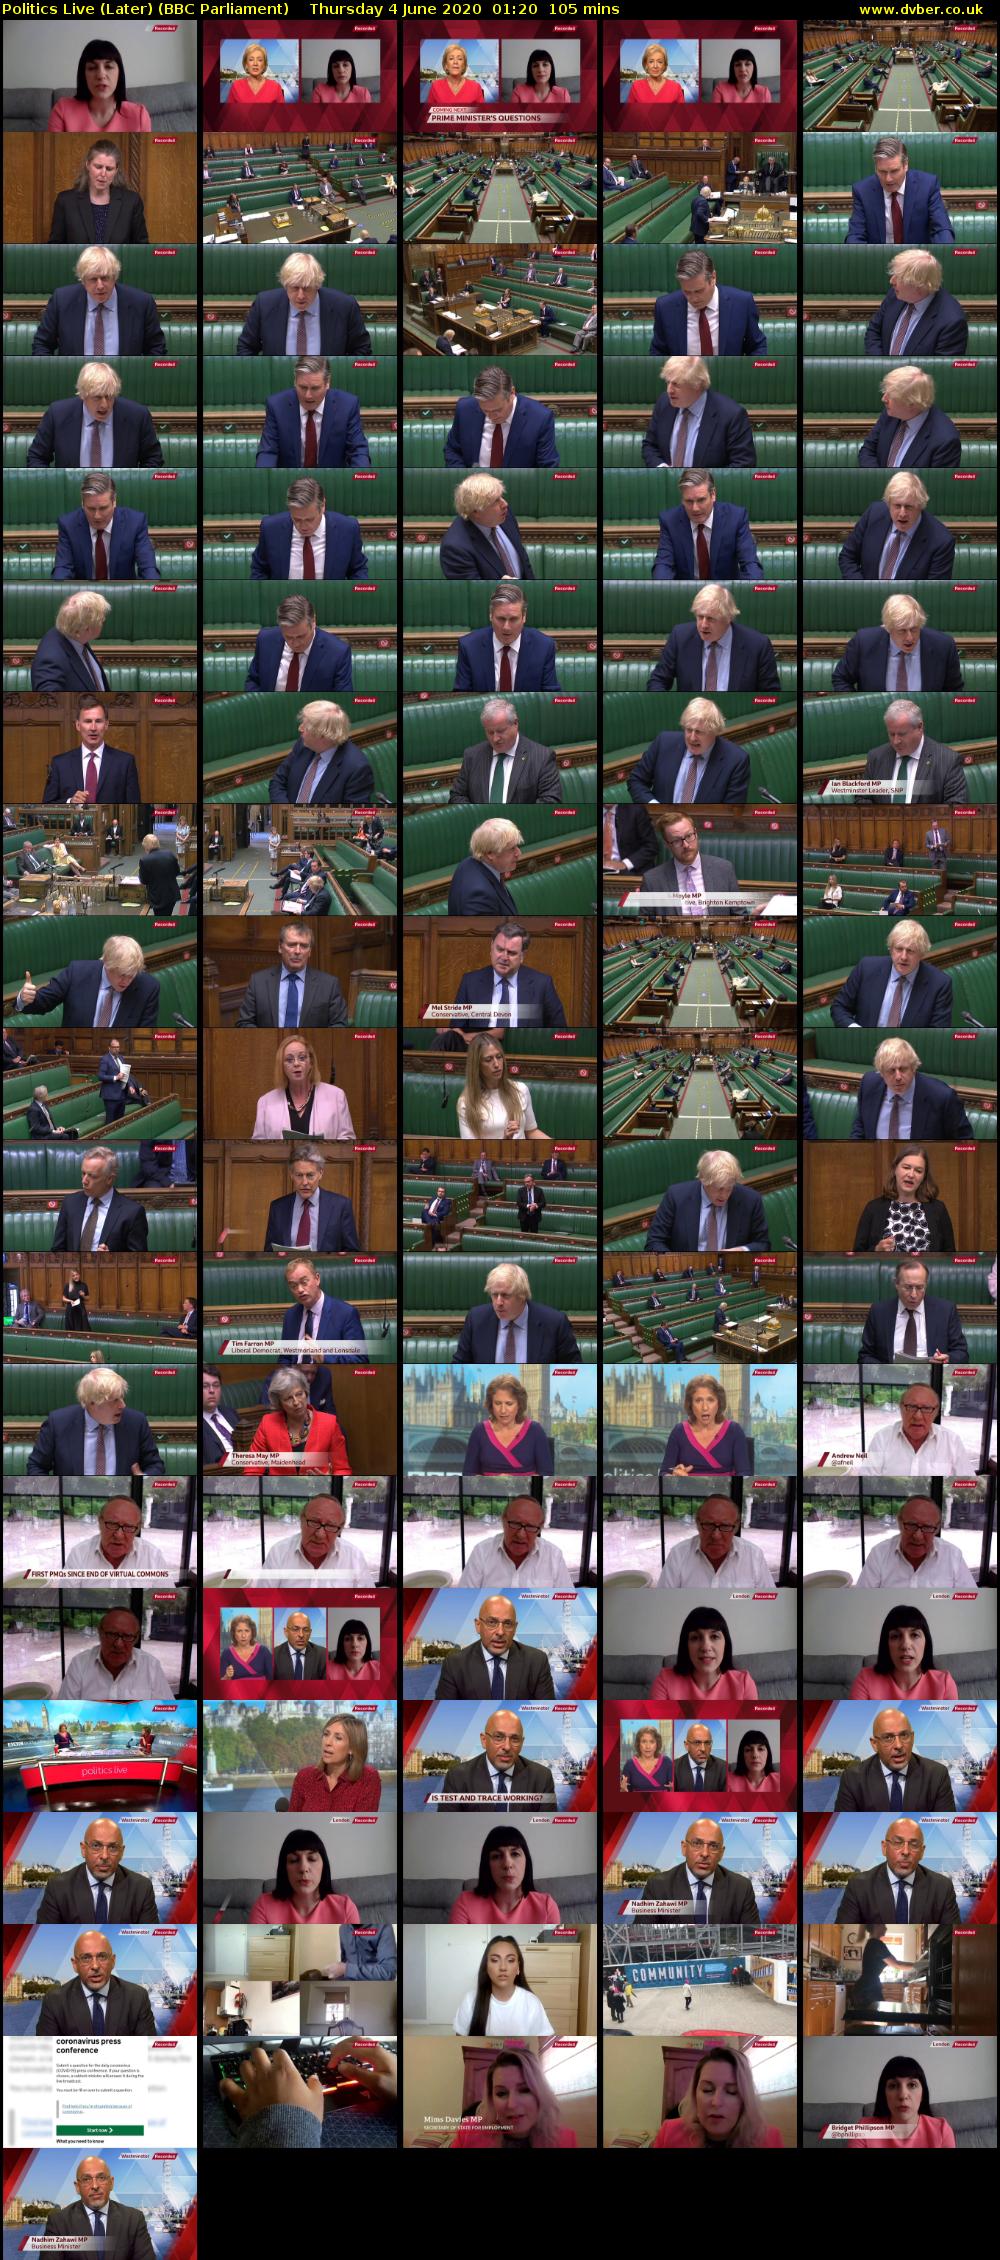 Politics Live (Later) (BBC Parliament) Thursday 4 June 2020 01:20 - 03:05